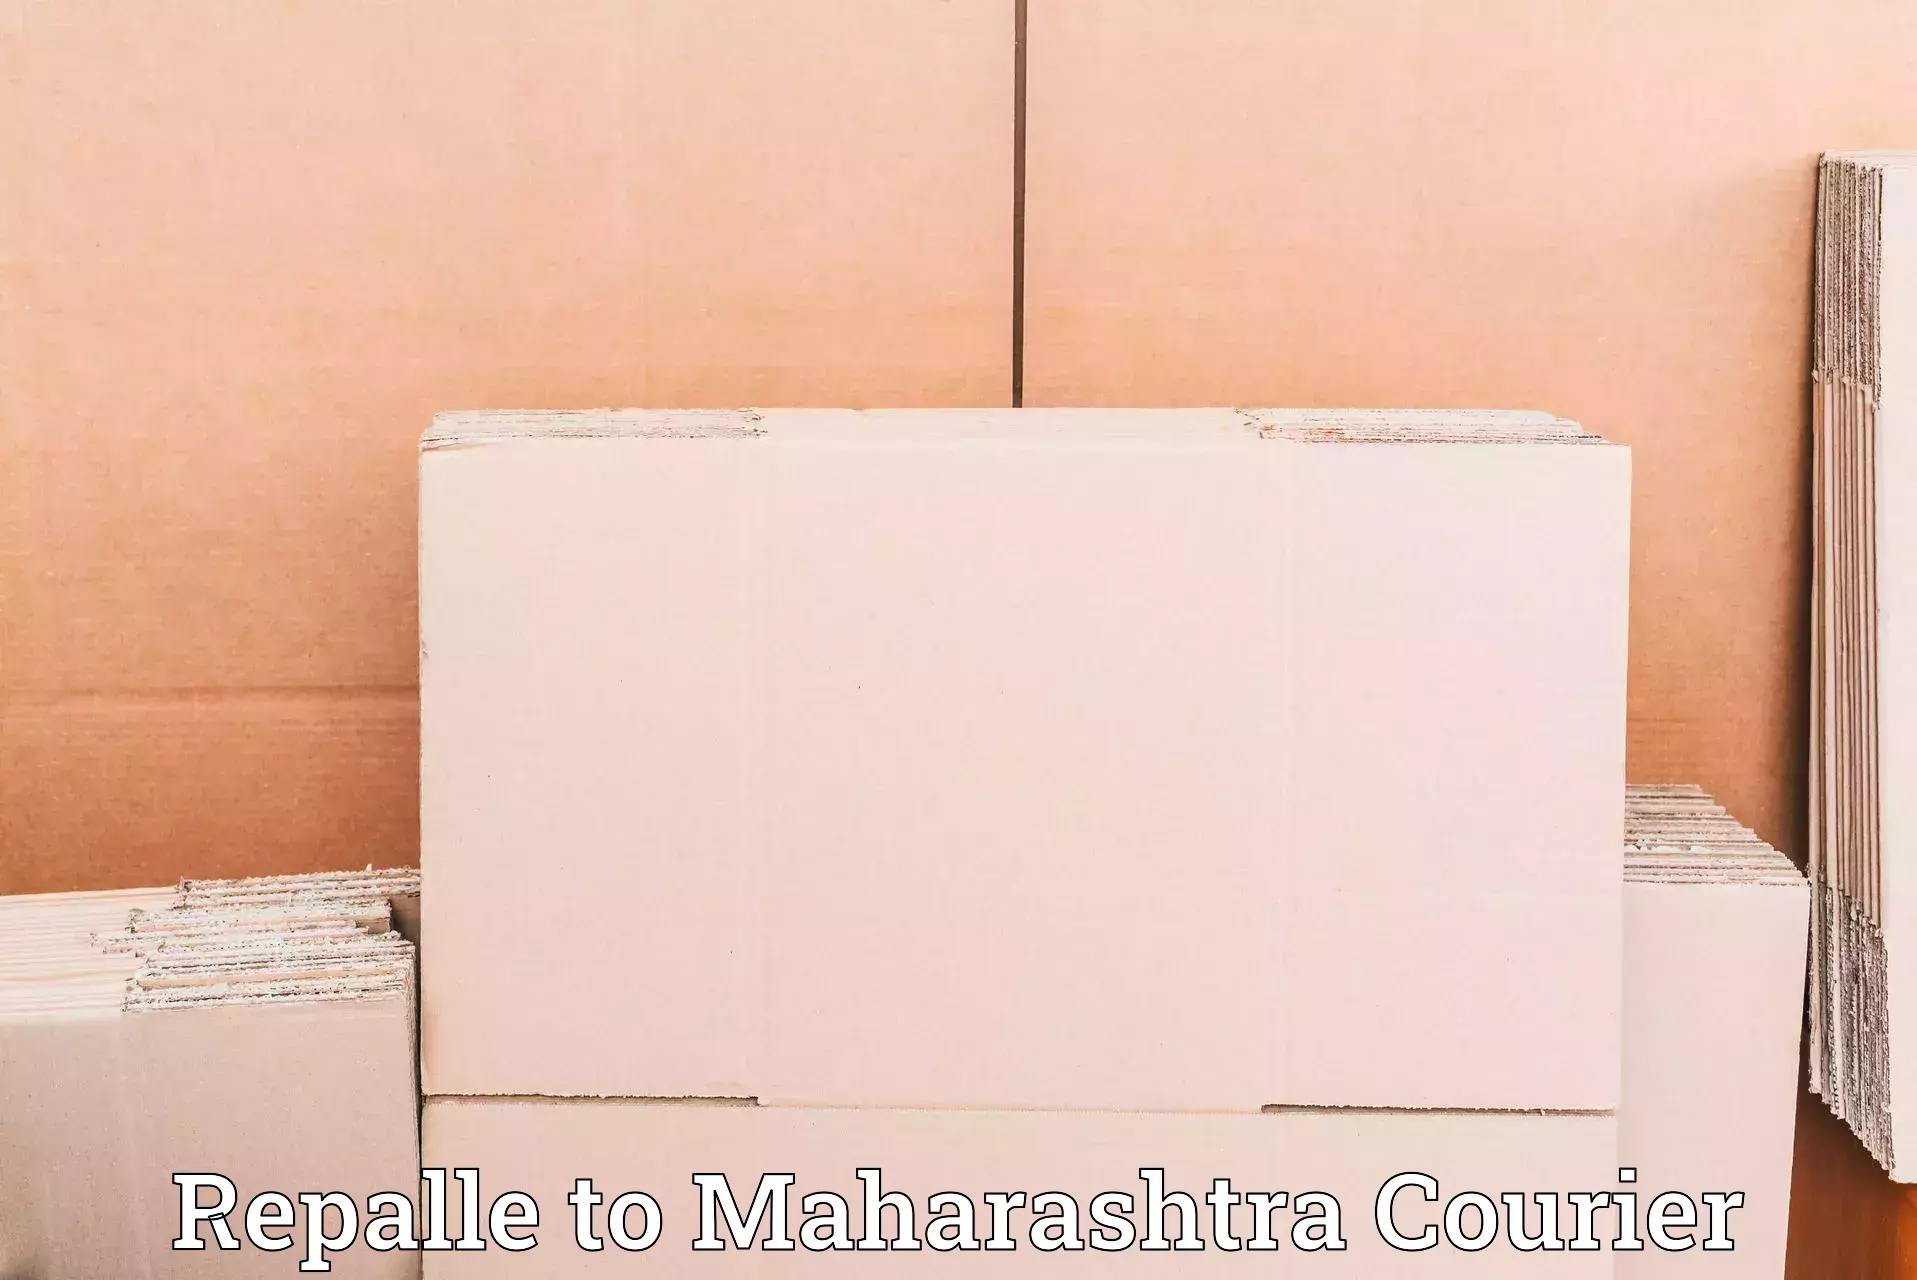 Premium courier solutions Repalle to Mumbai University